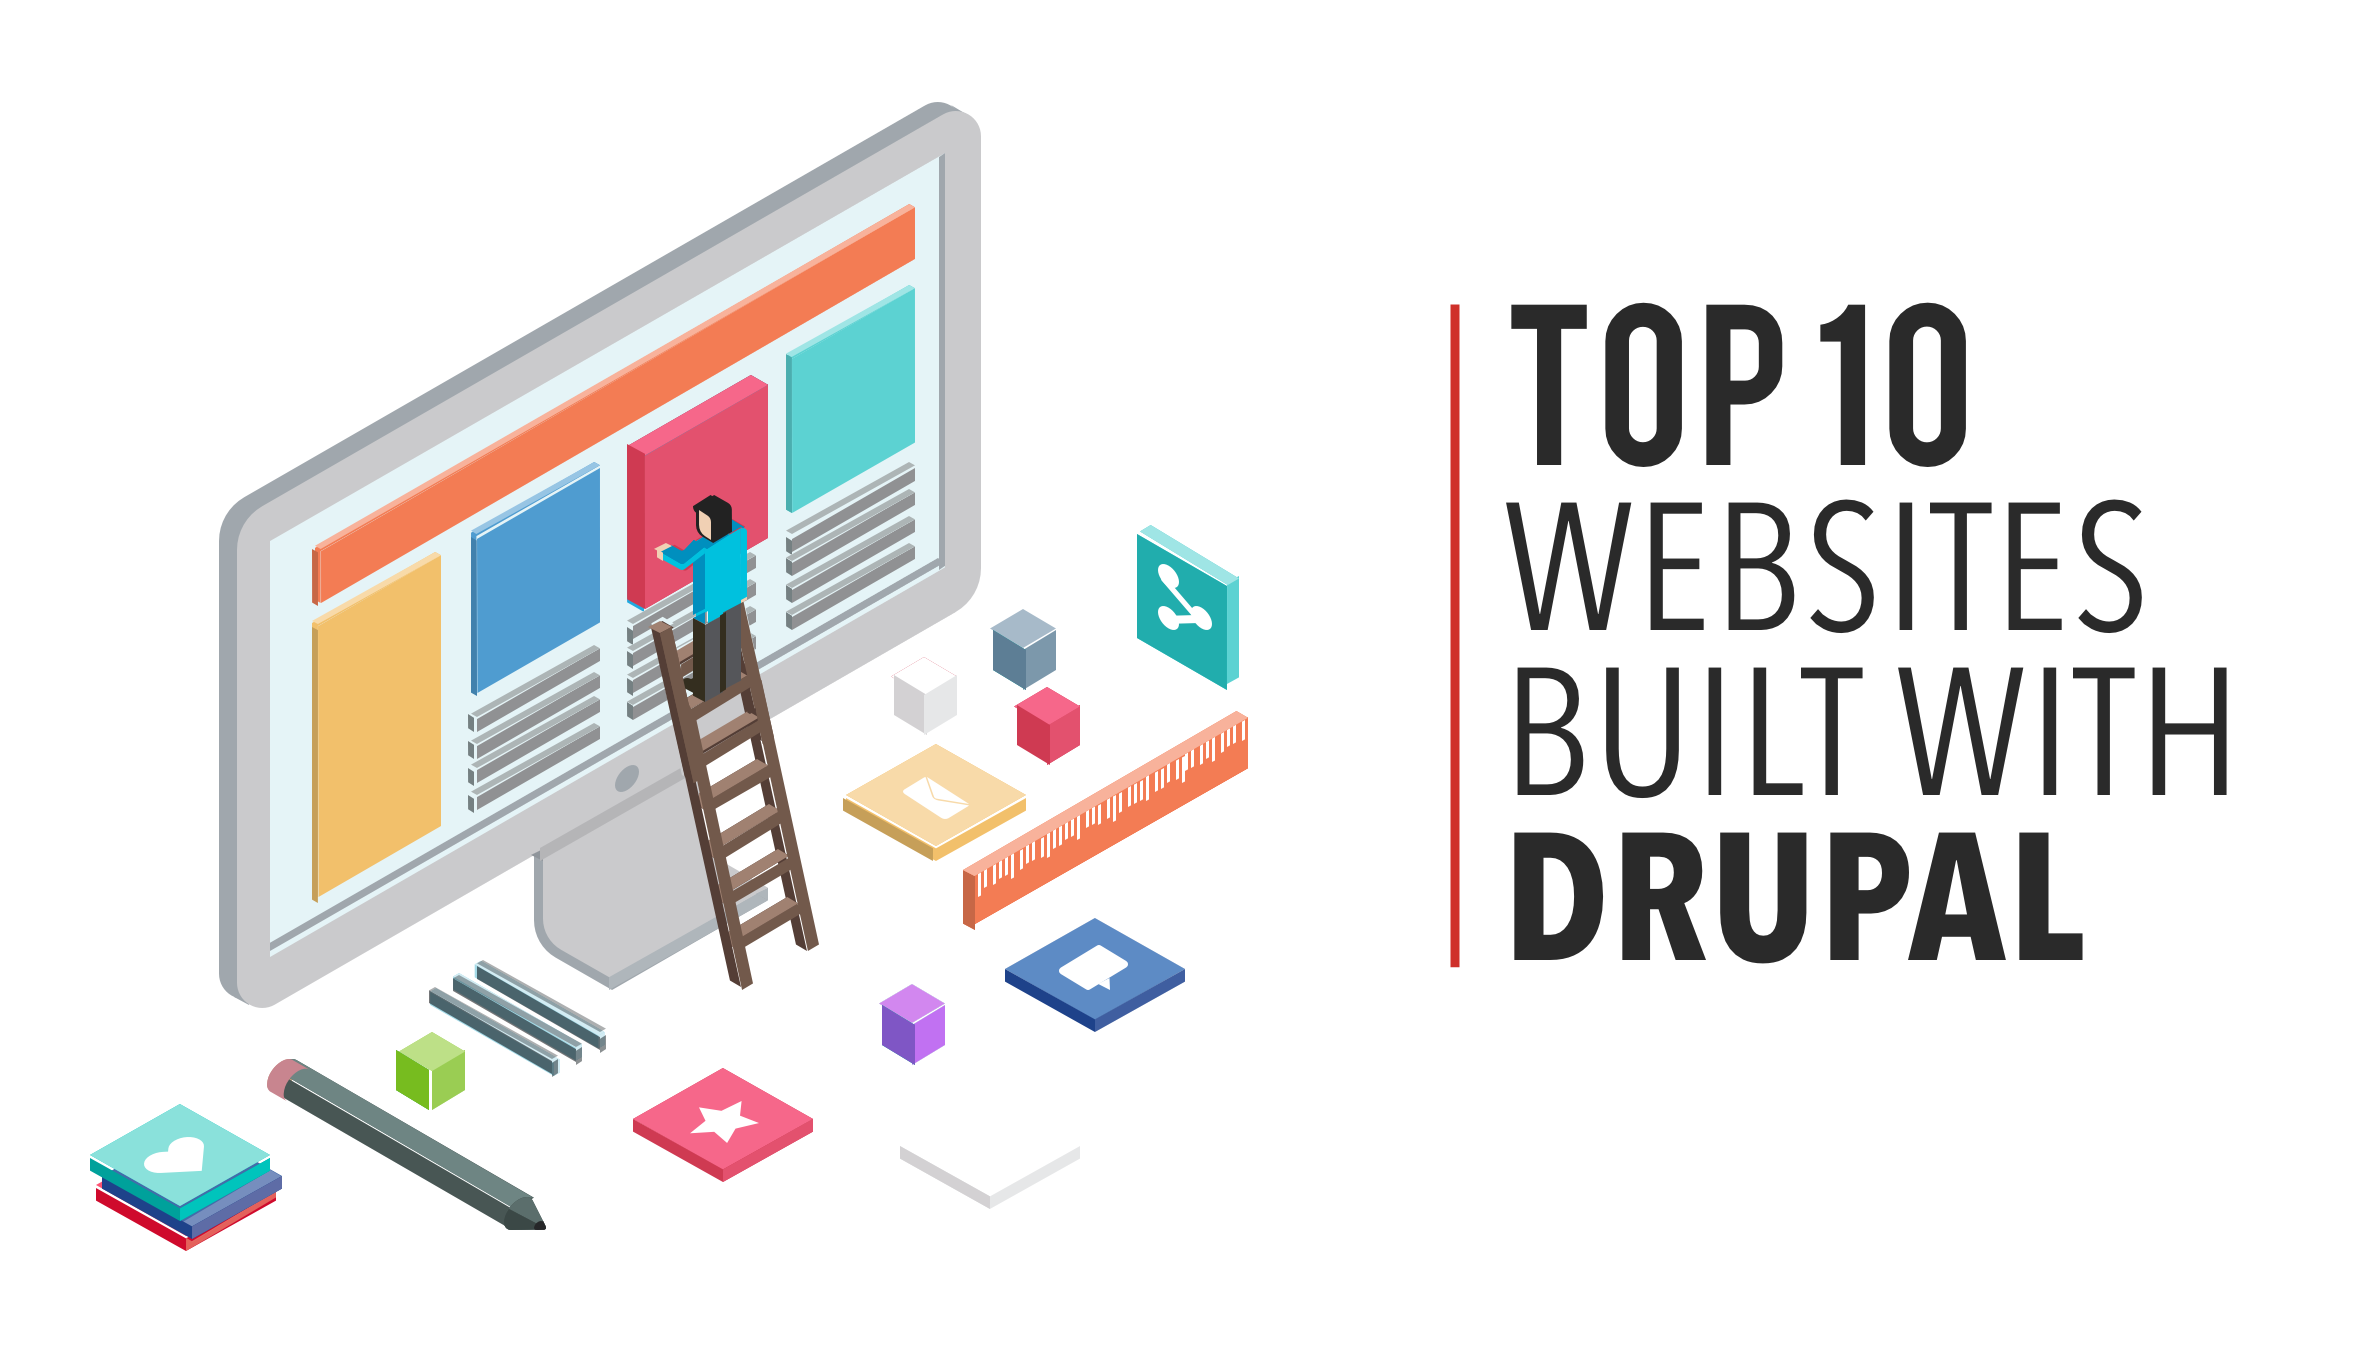 Top 10 Websites Built with Drupal